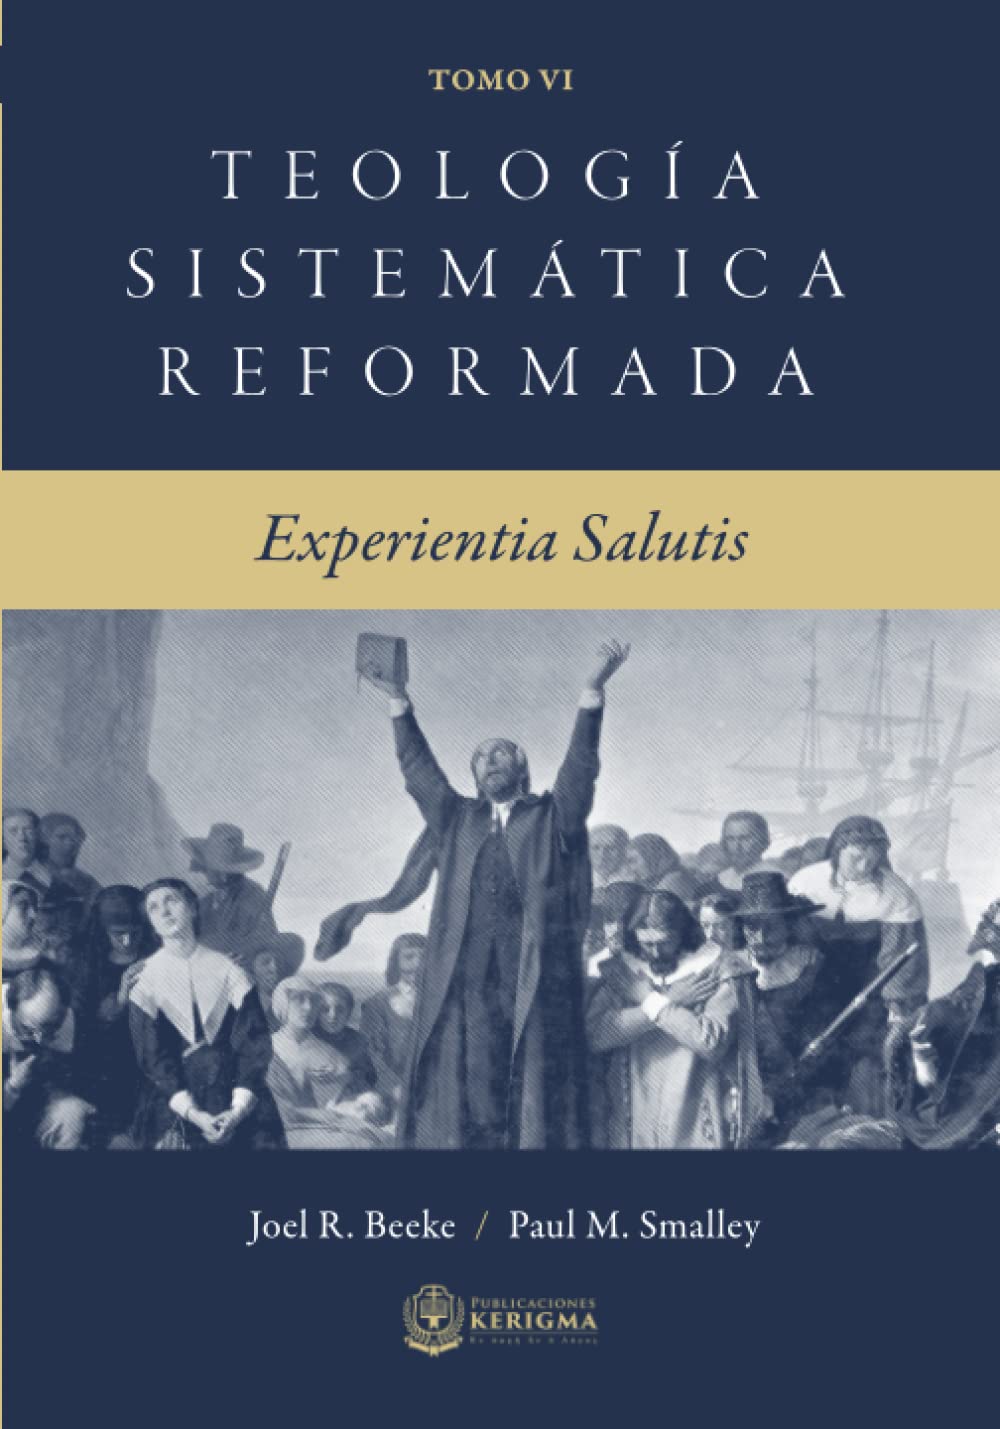 Teología Sistemática Reformada Vol 6 - Experientia Salutis